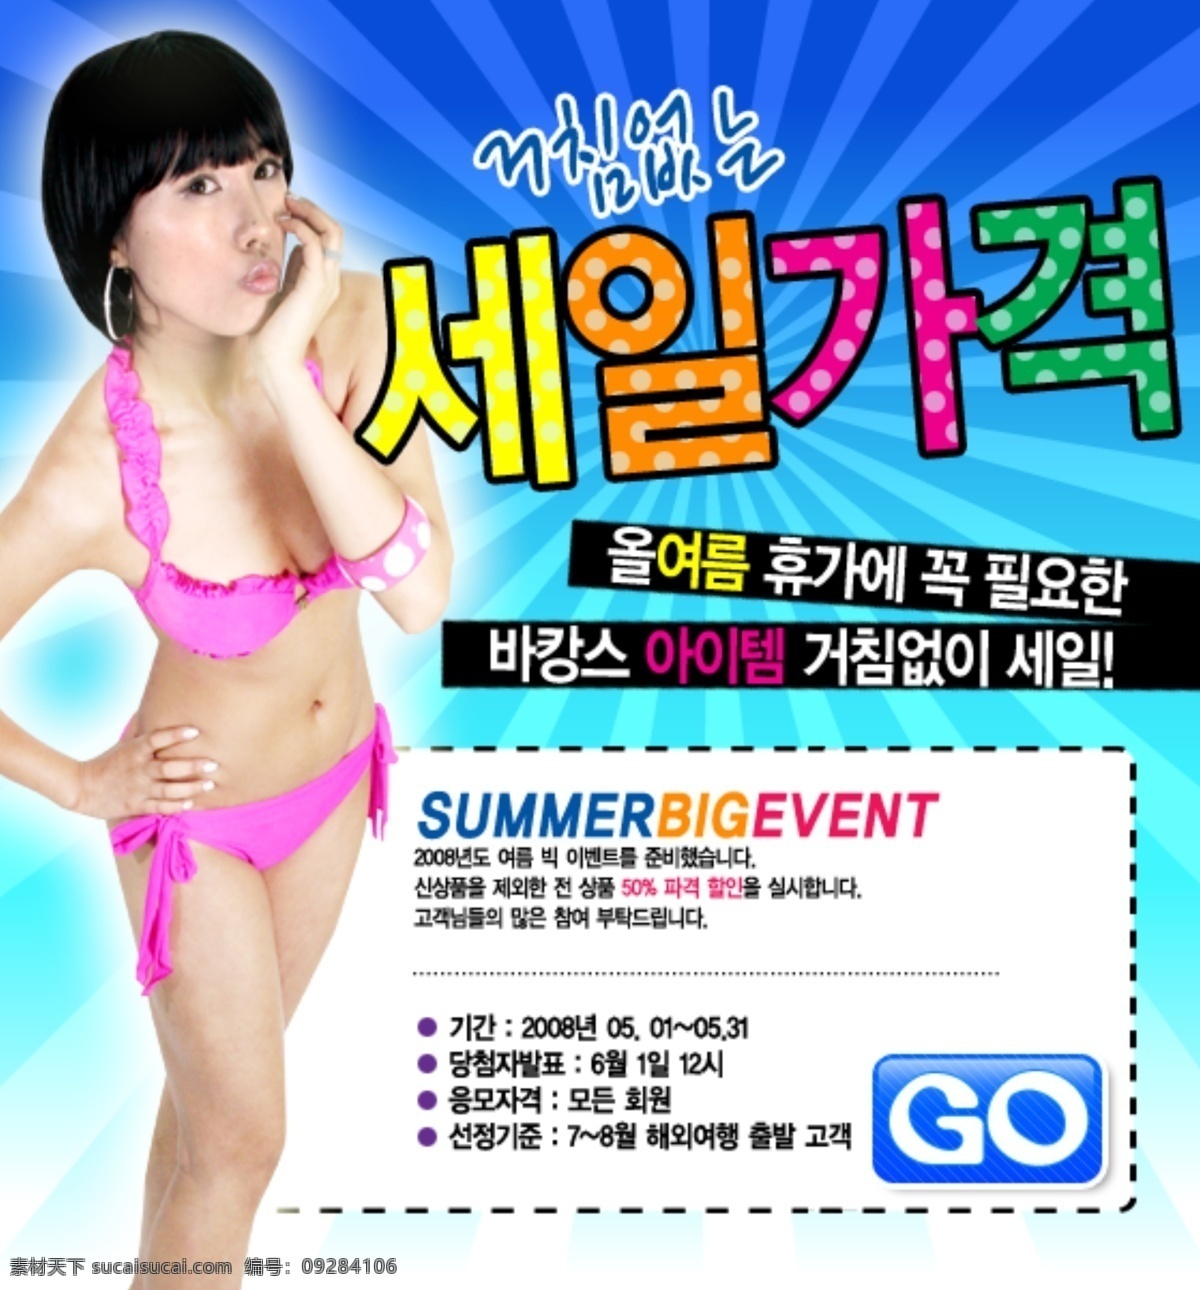 夏季 海边 旅游 促销 广告 比基尼美女 韩文字体 原创设计 其他原创设计